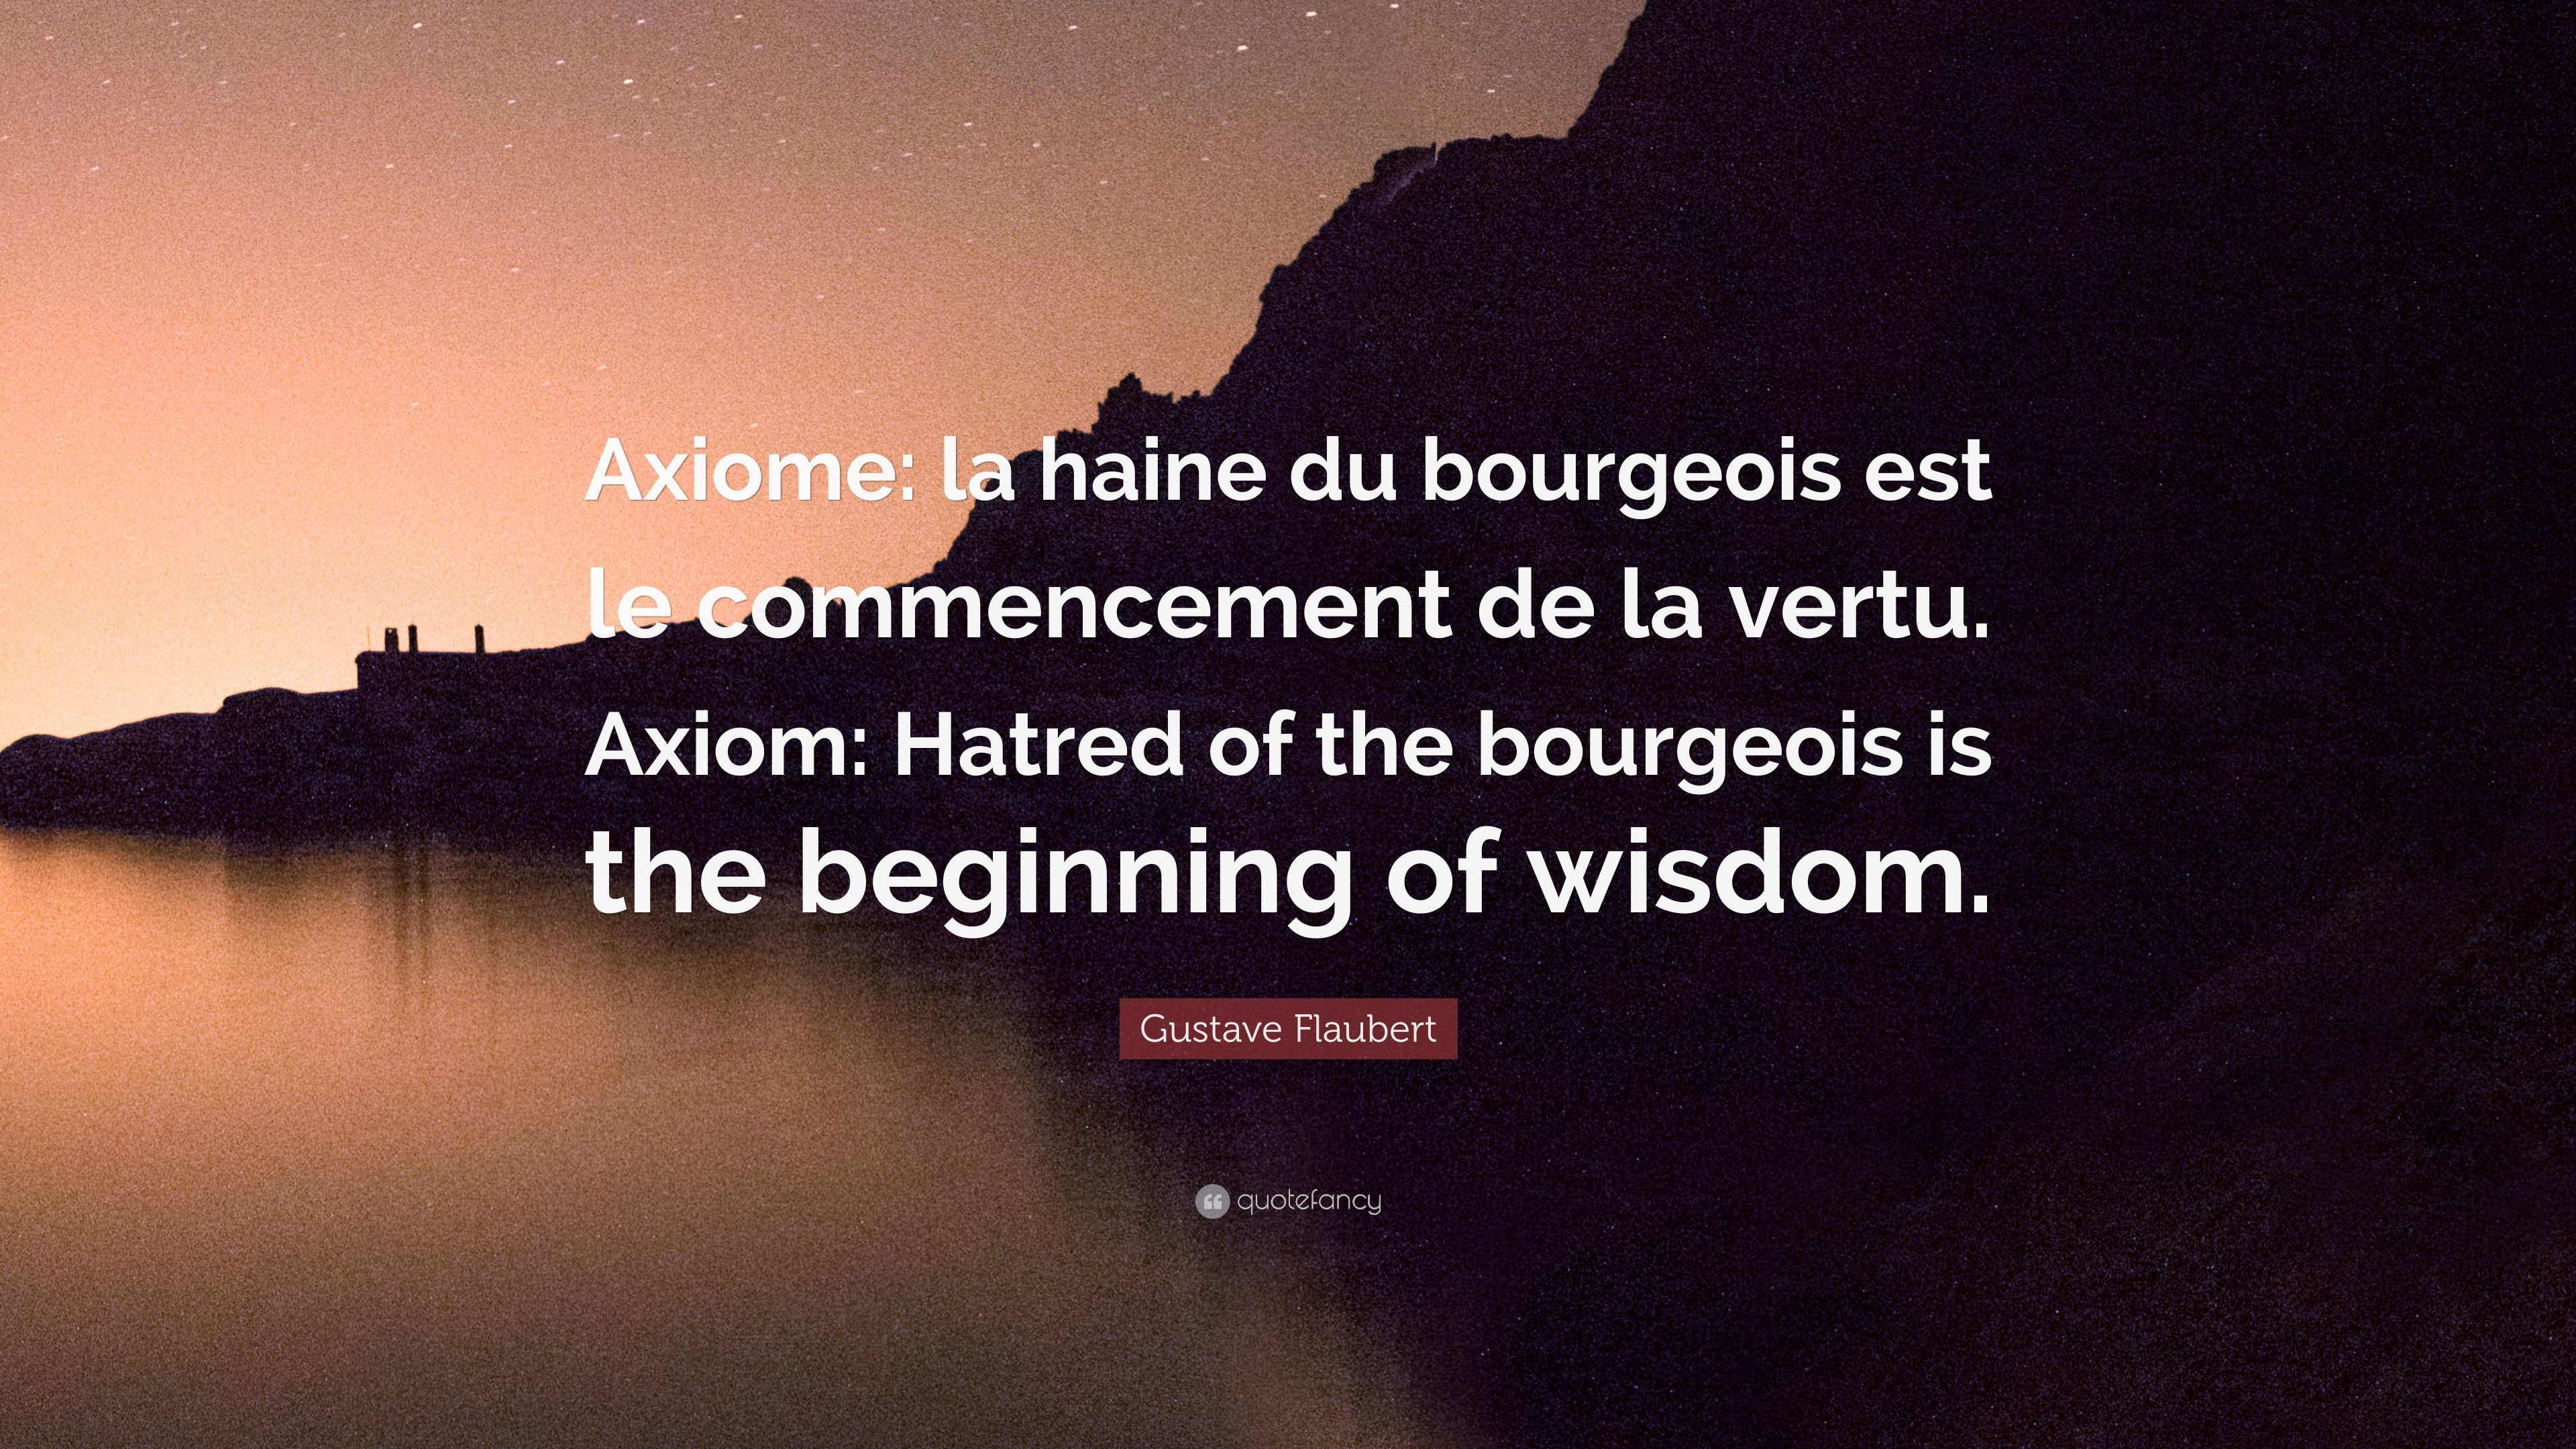 Gustave Flaubert Quote: “Axiome: la haine du bourgeois est le